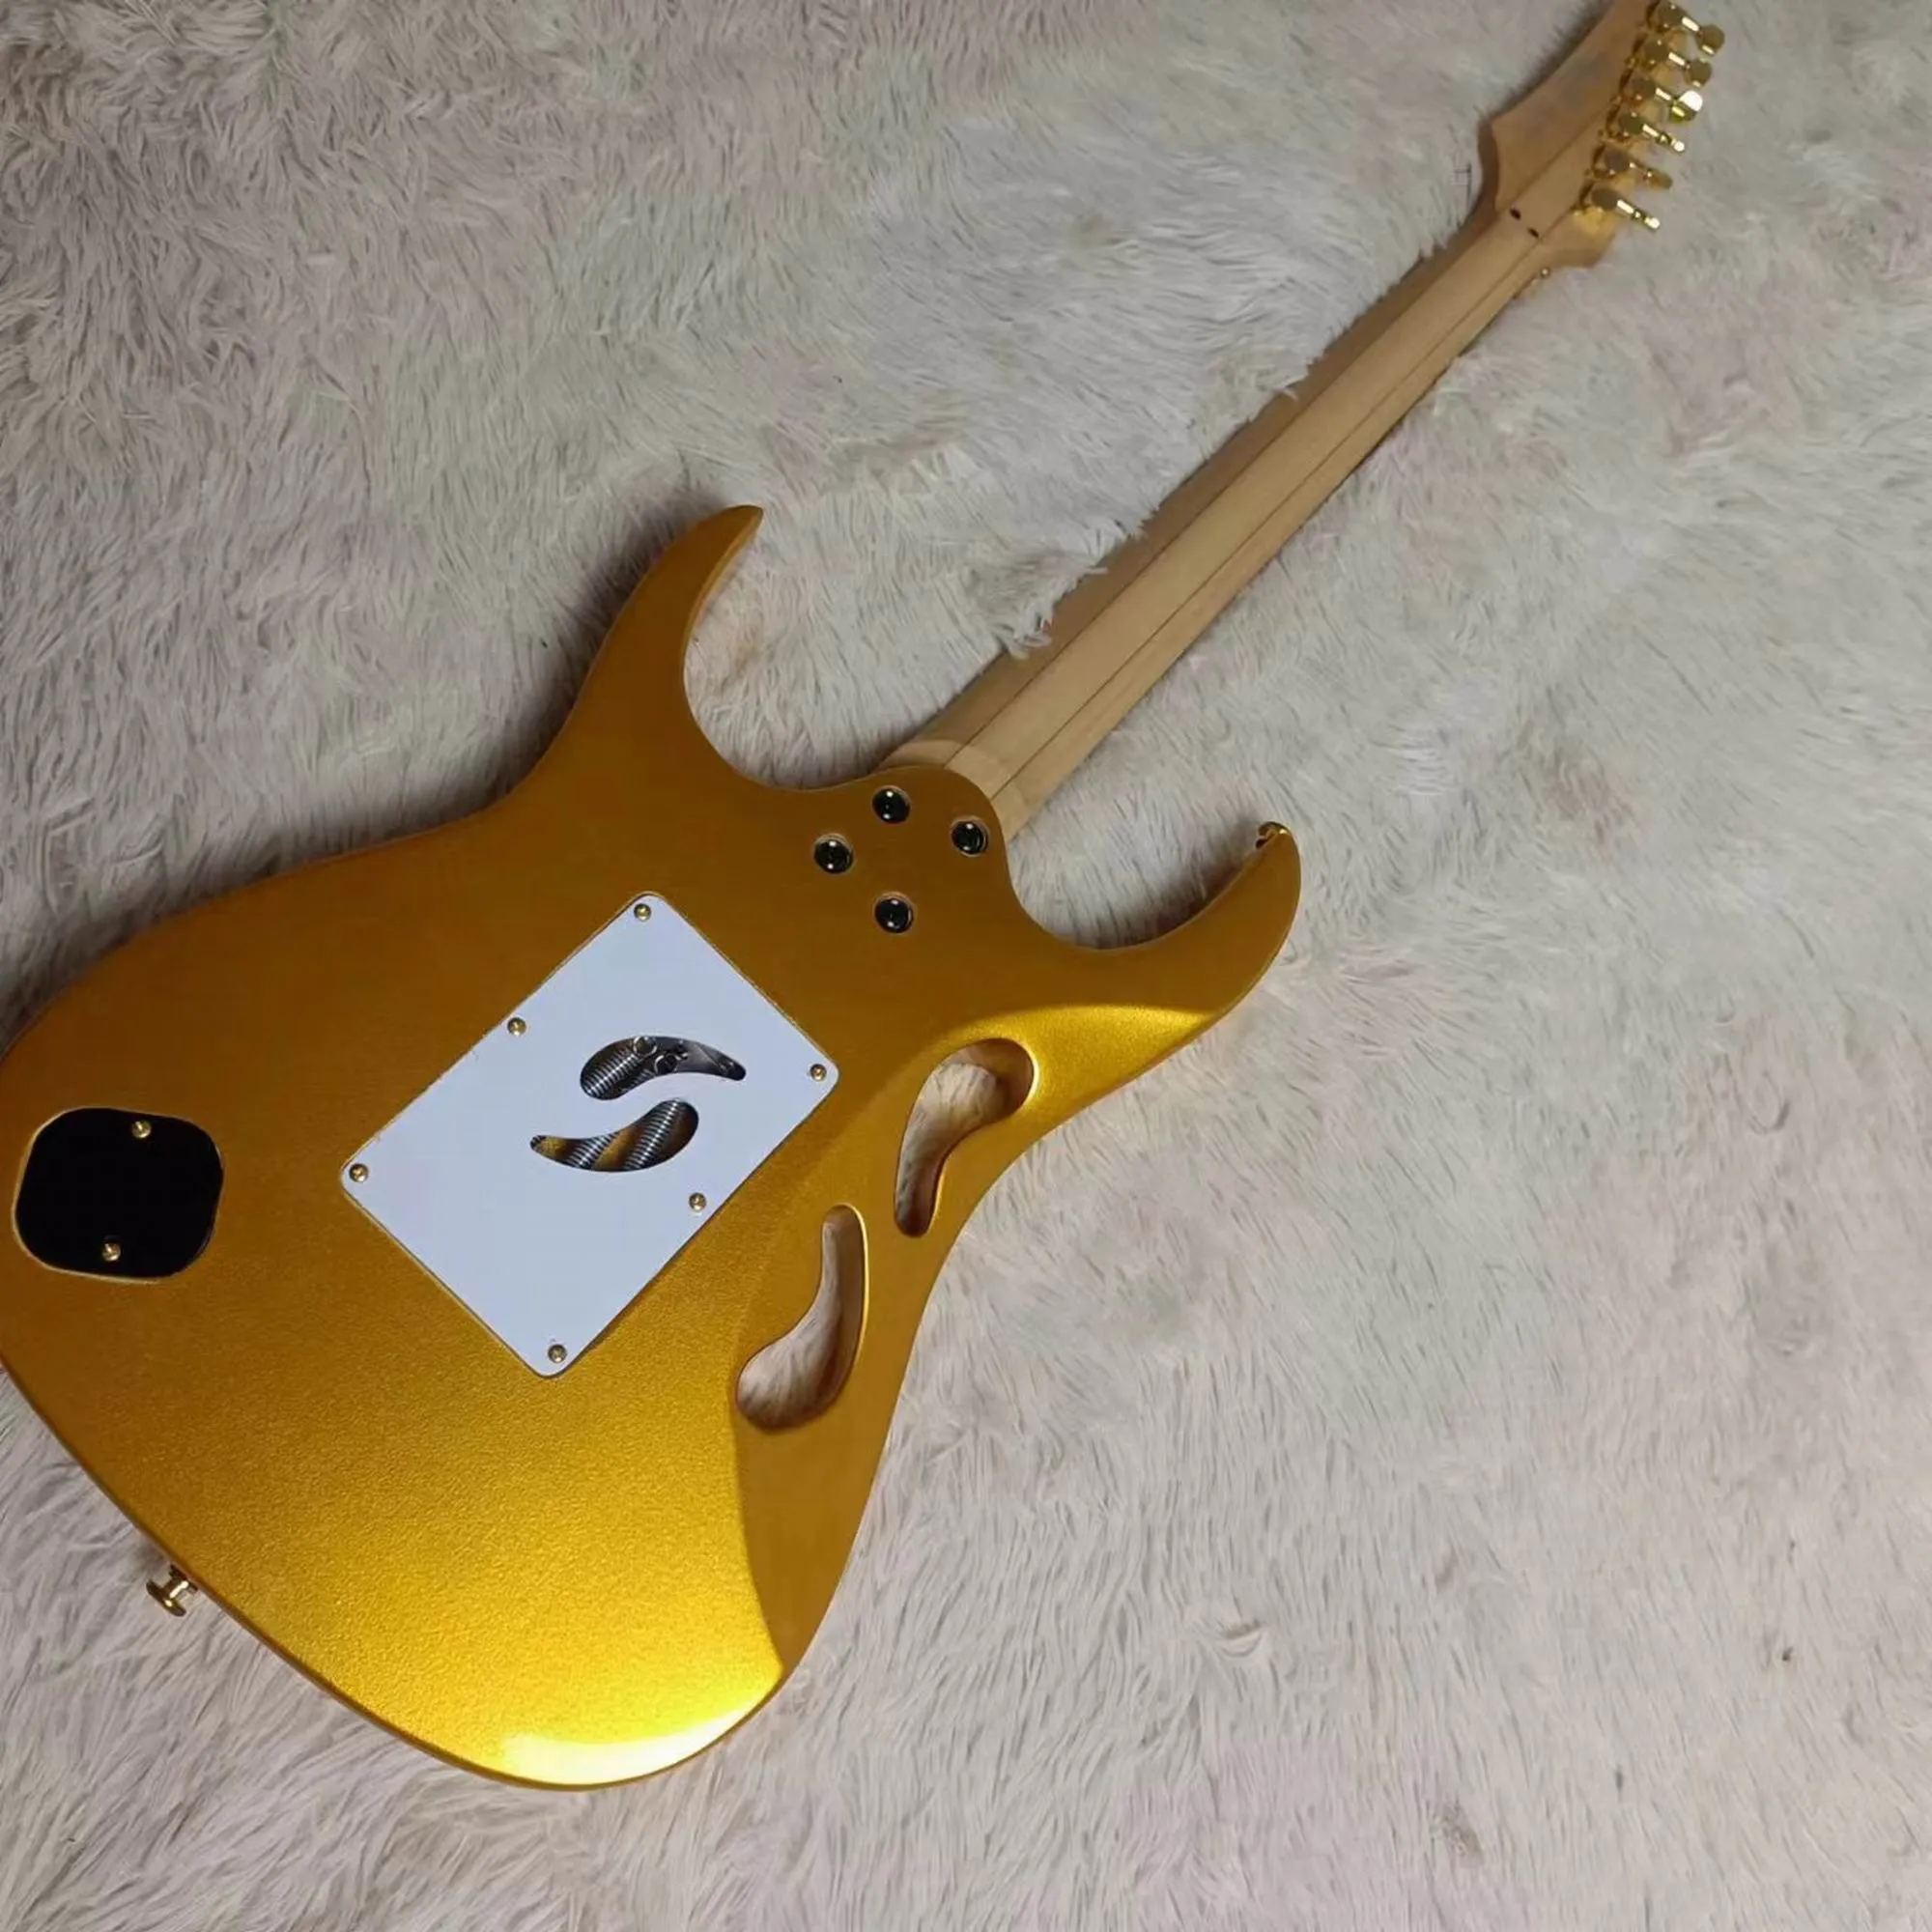 Stokta Jem Electric Guitar Visa 7v Modeli Altın Goldtop 2403